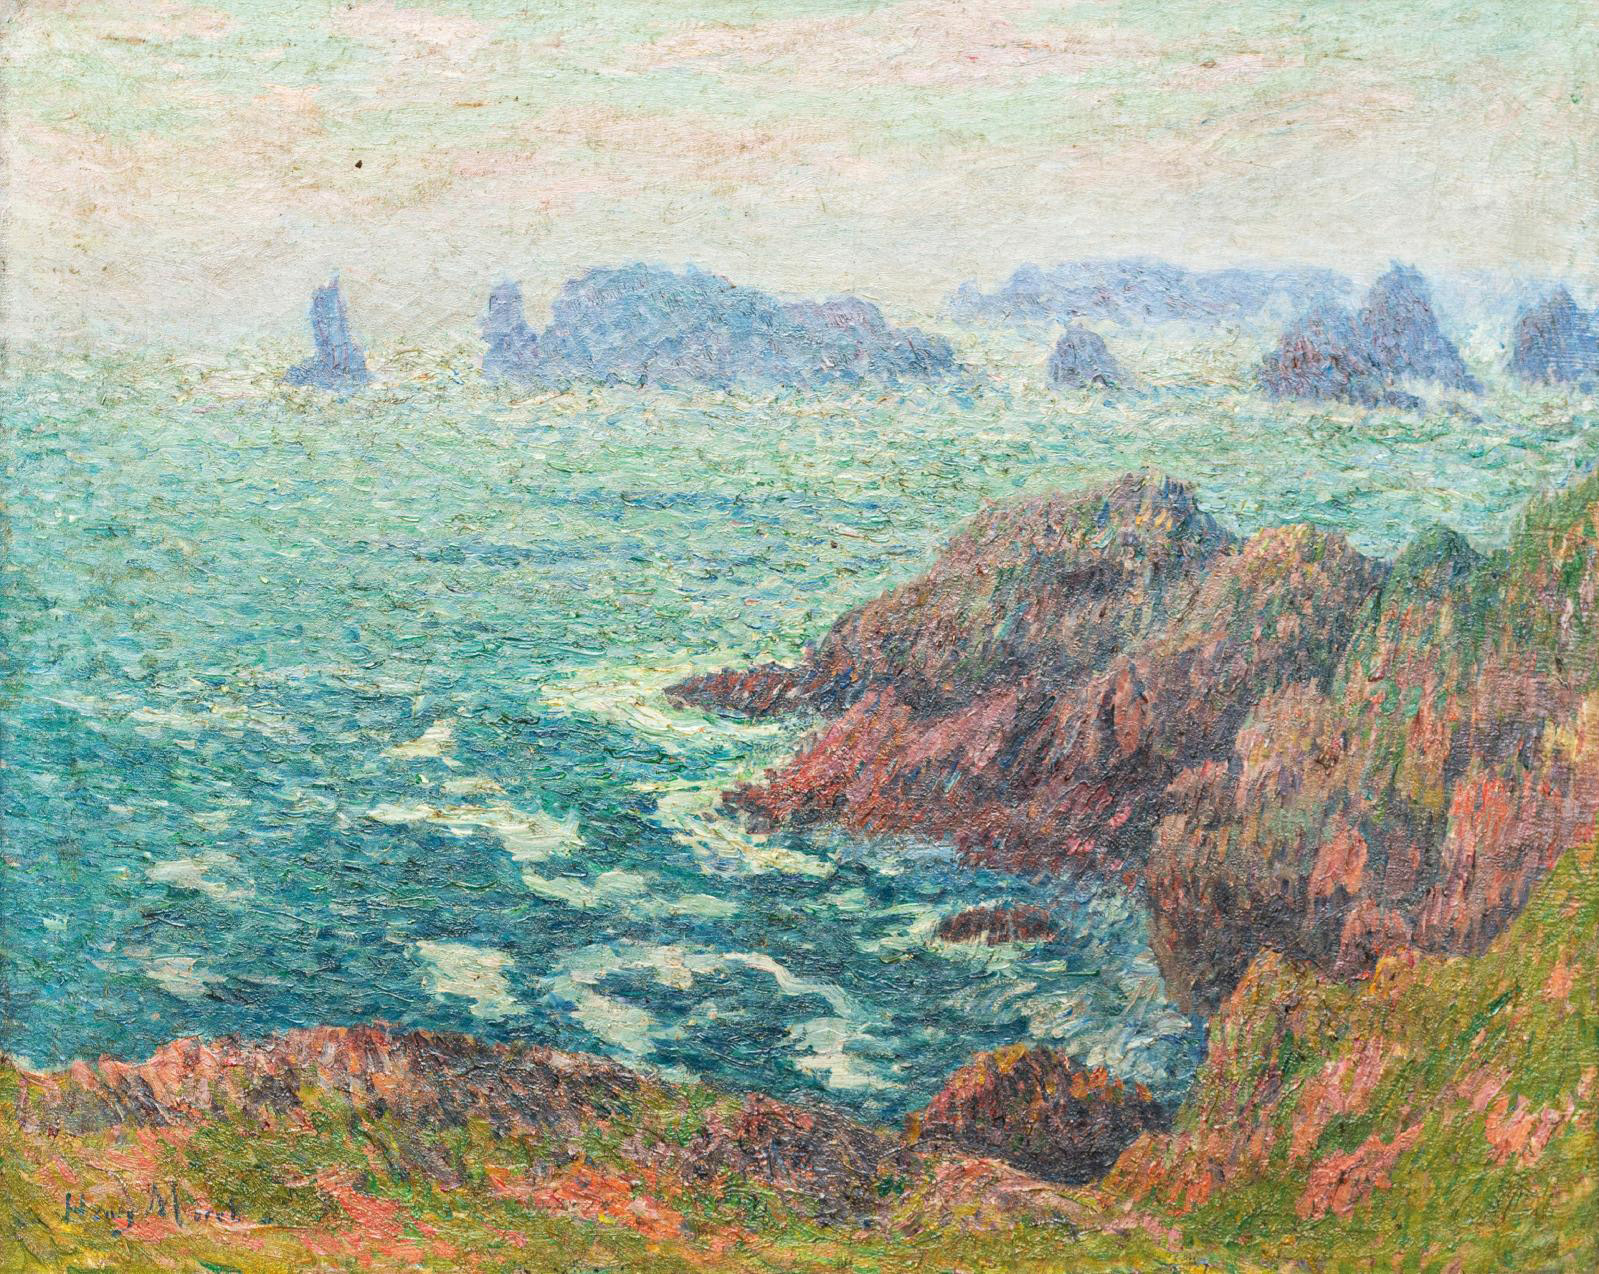 Henry Moret, L’Ile d’Ouessant, la chaussée Keller (Ouessant, Keller Shoreline), 1897, oil on canvas, 60 x 73 cm/23.62 x 28.74 in.© Ville d